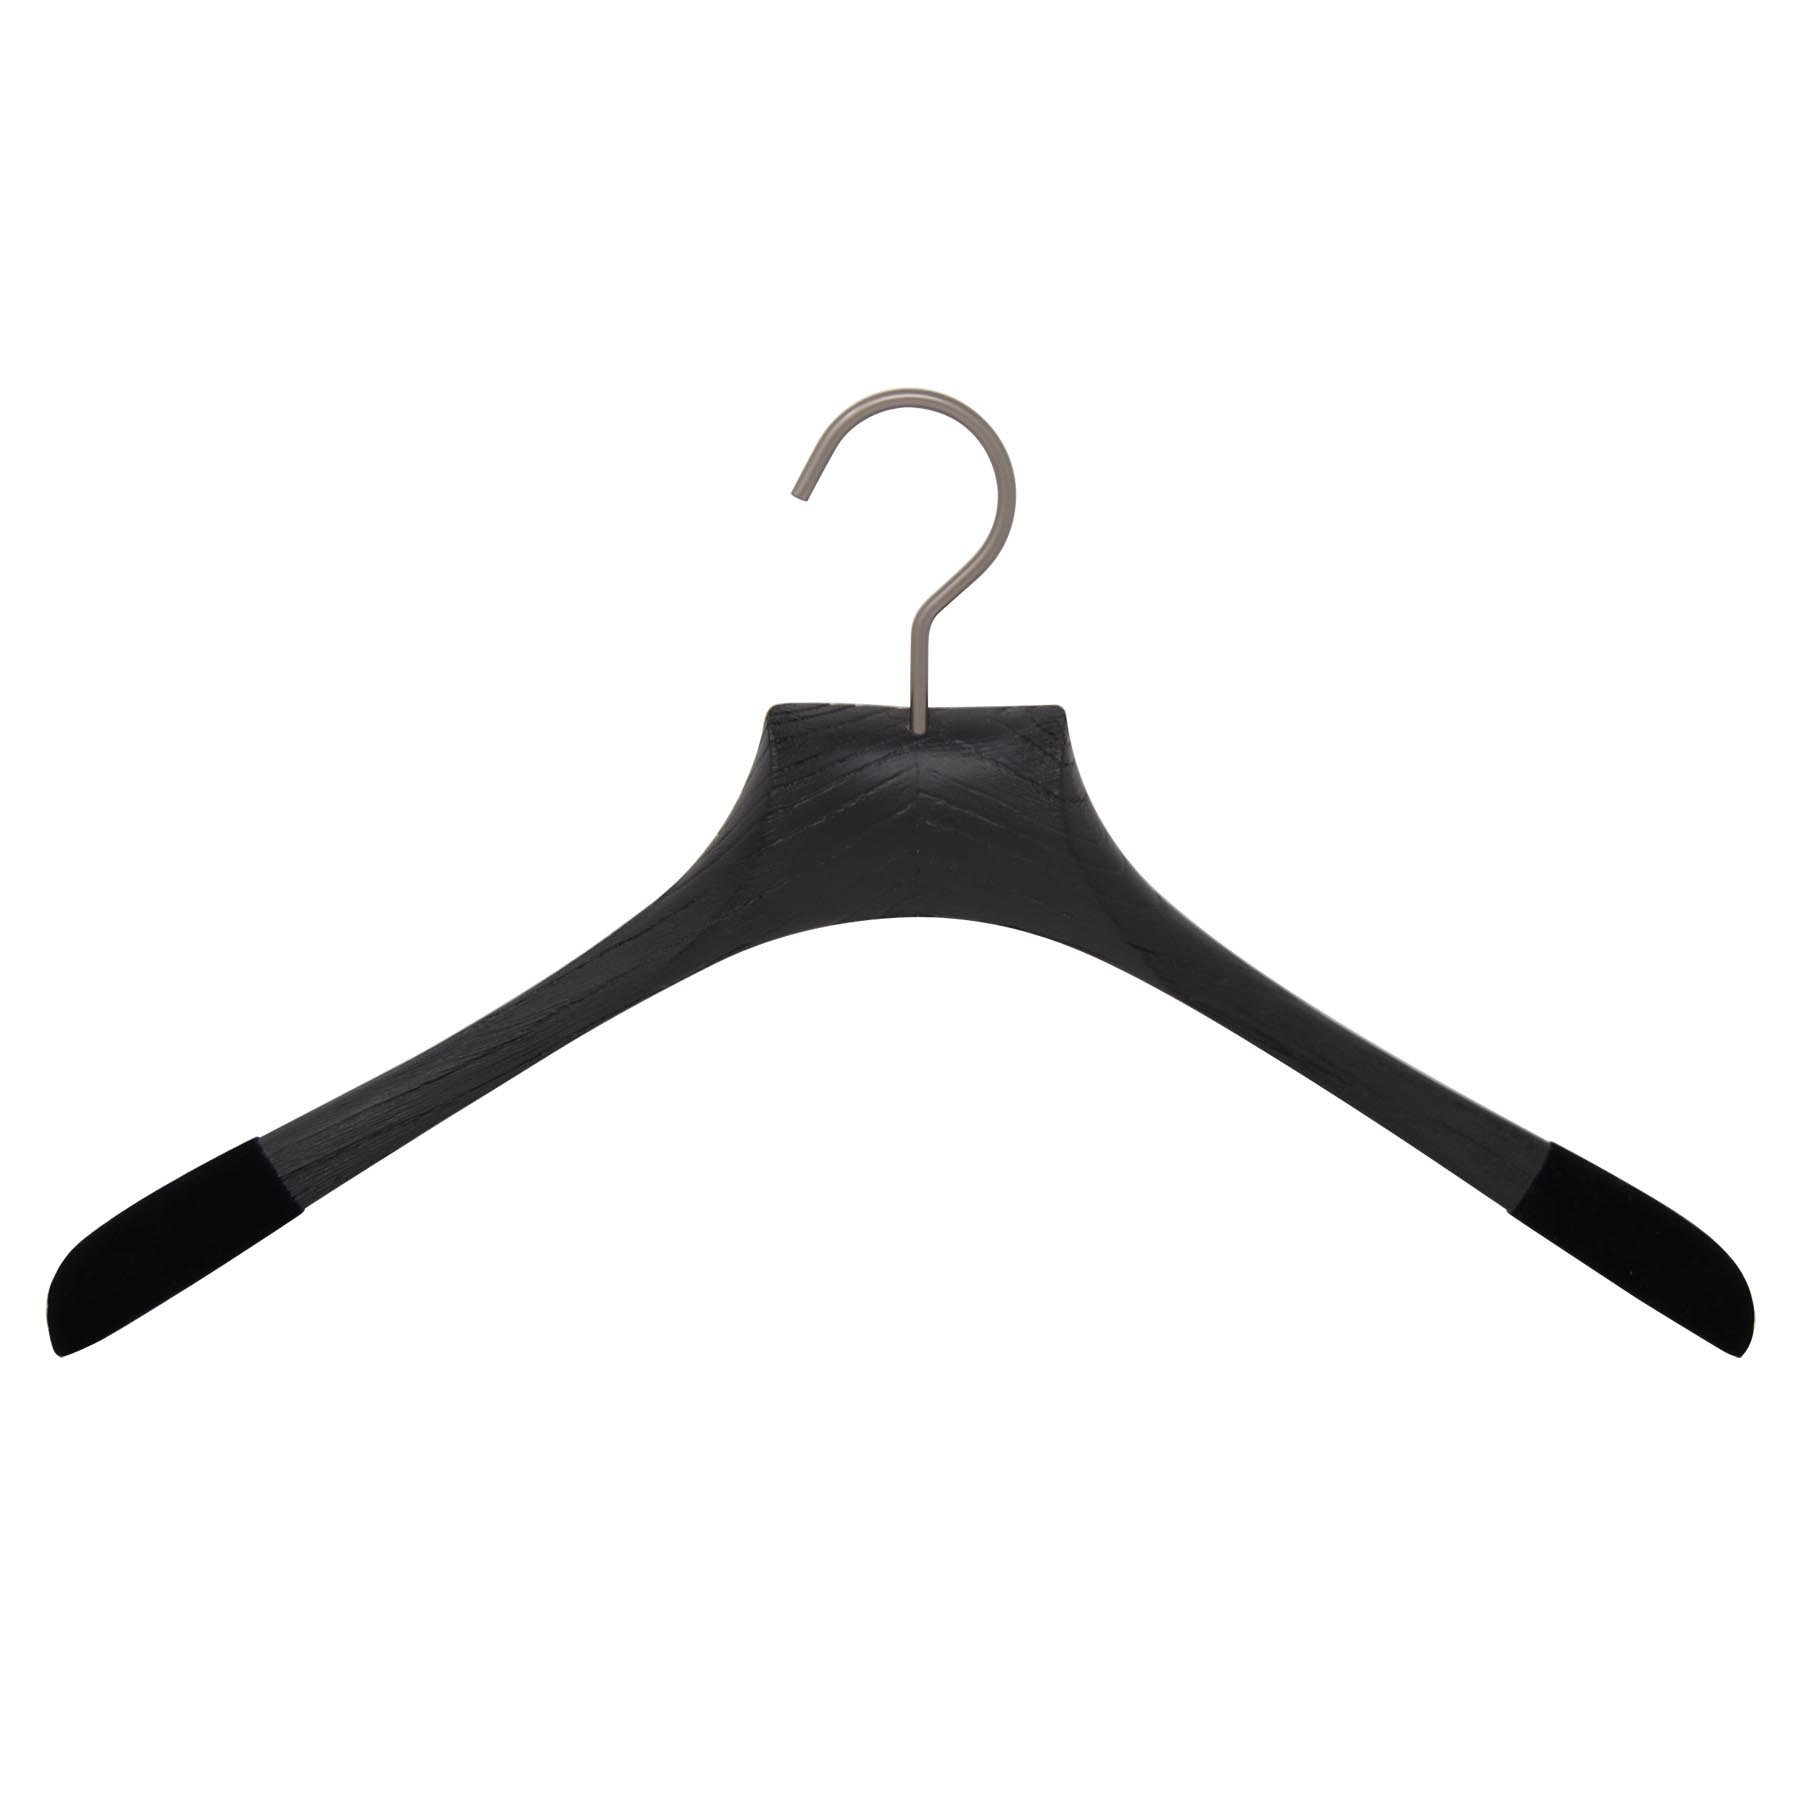 10 Kleiderbügel für Hemd - schwarz, gebürstetes Holz (Breite 43 cm)